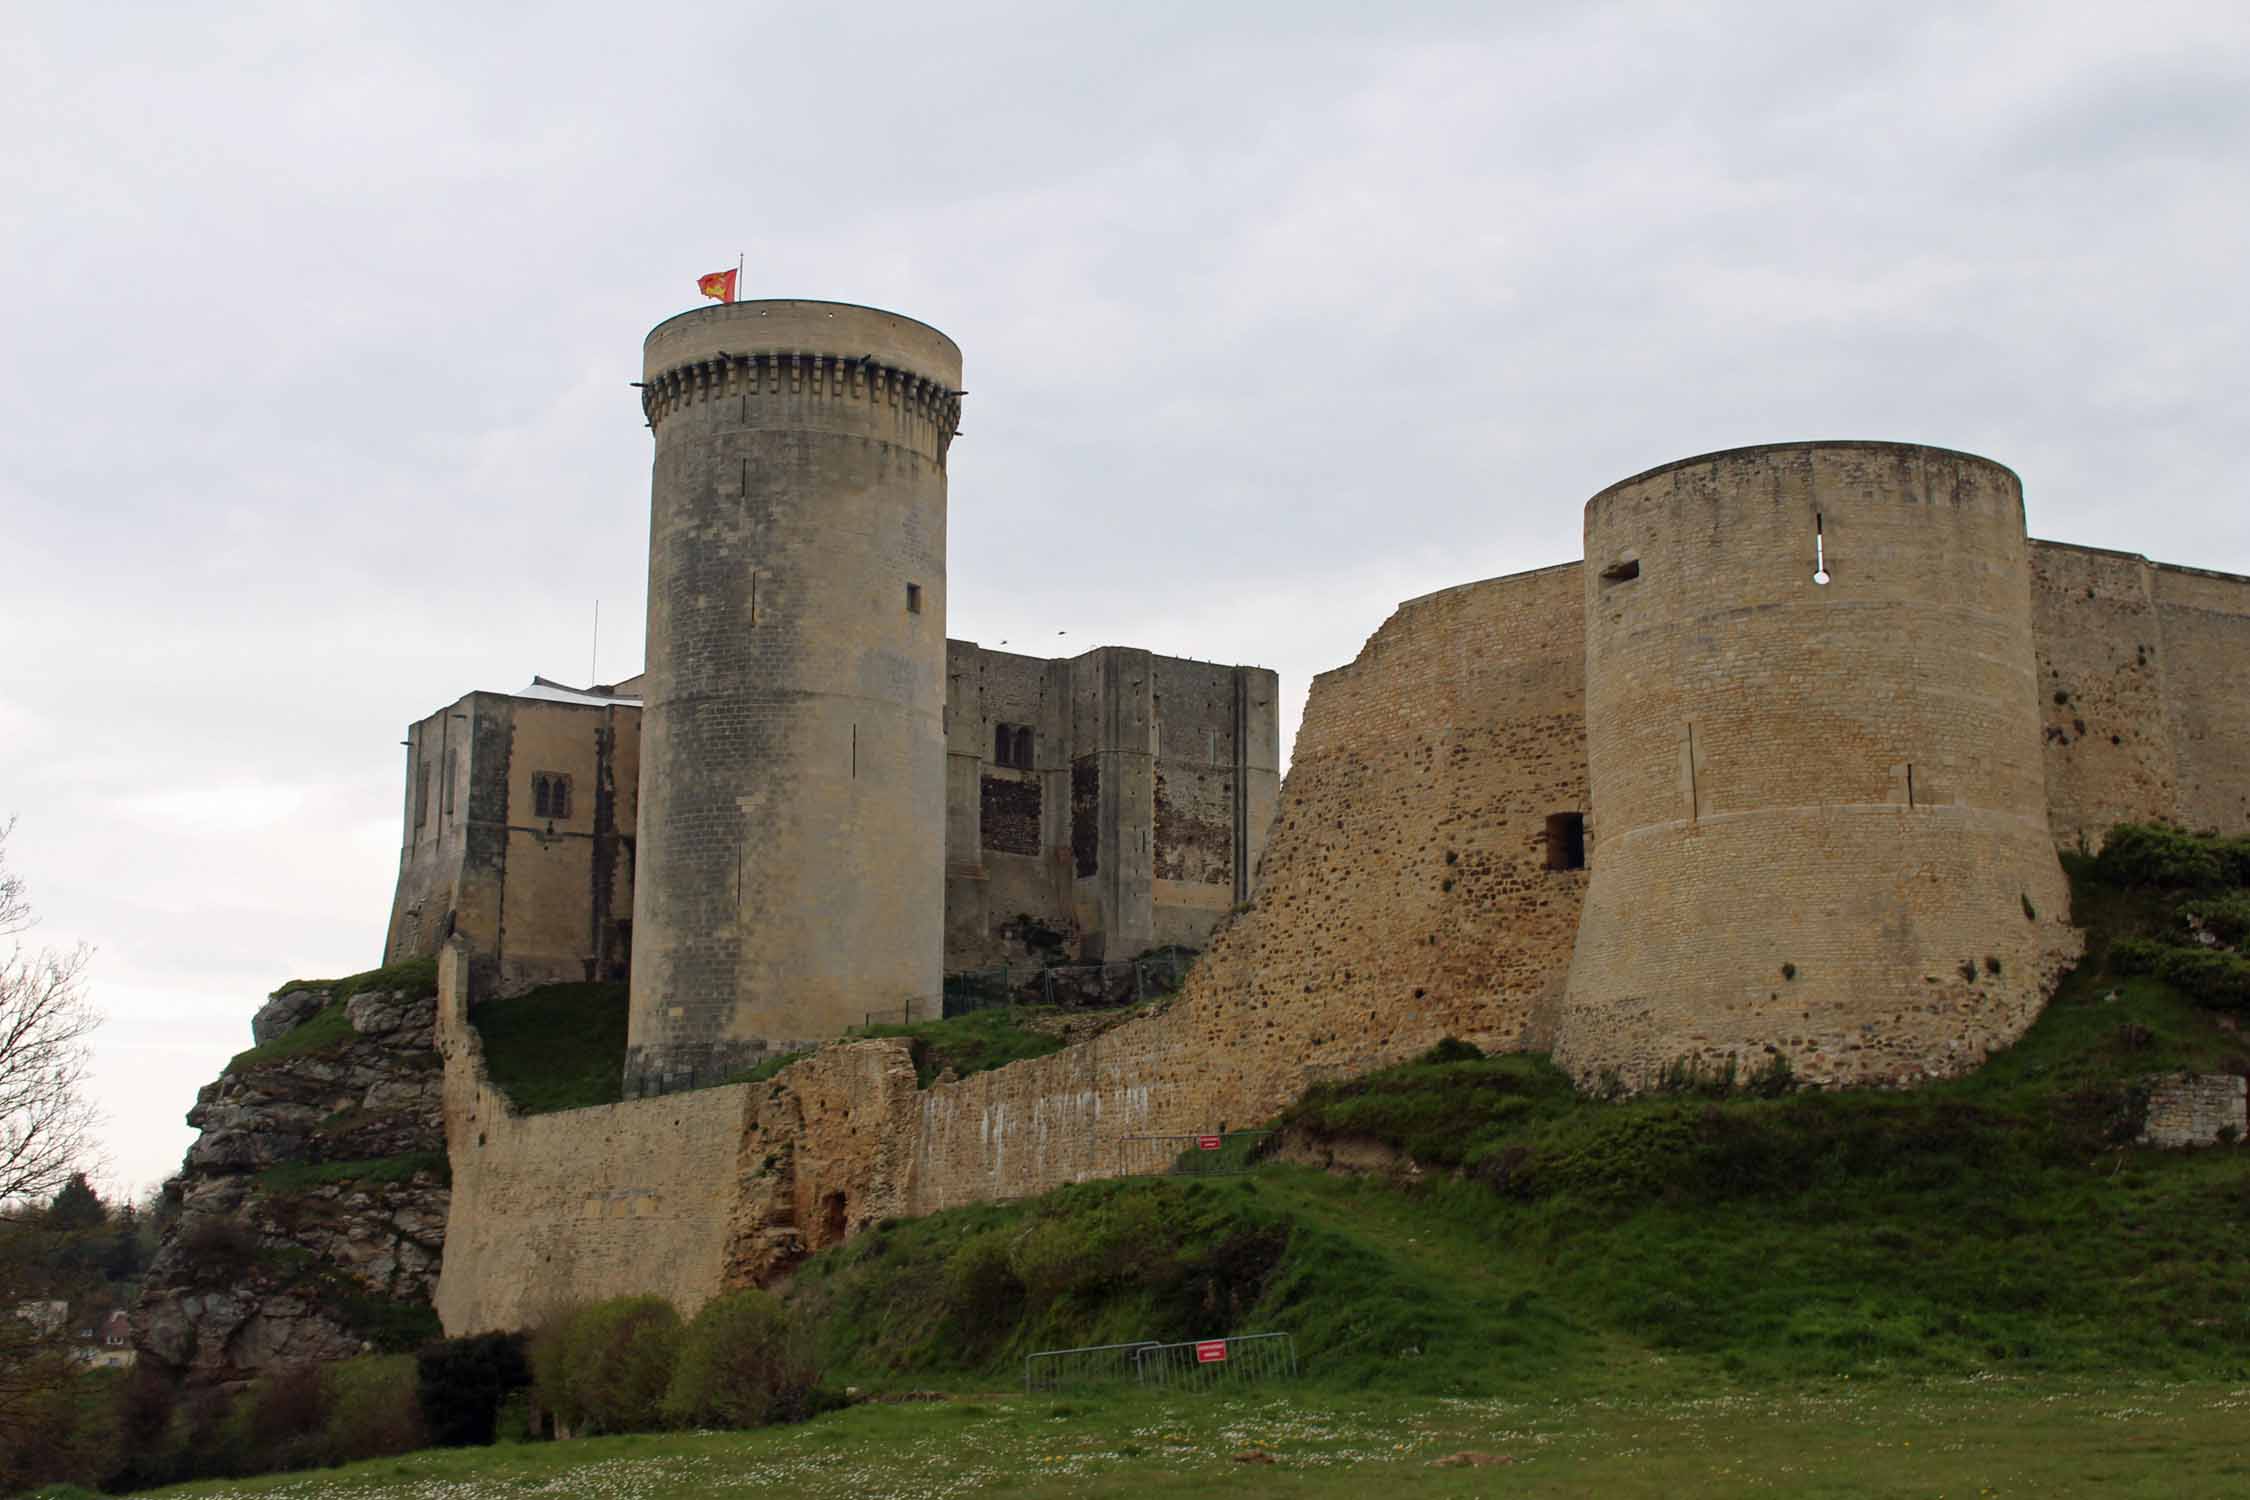 Château de Falaise